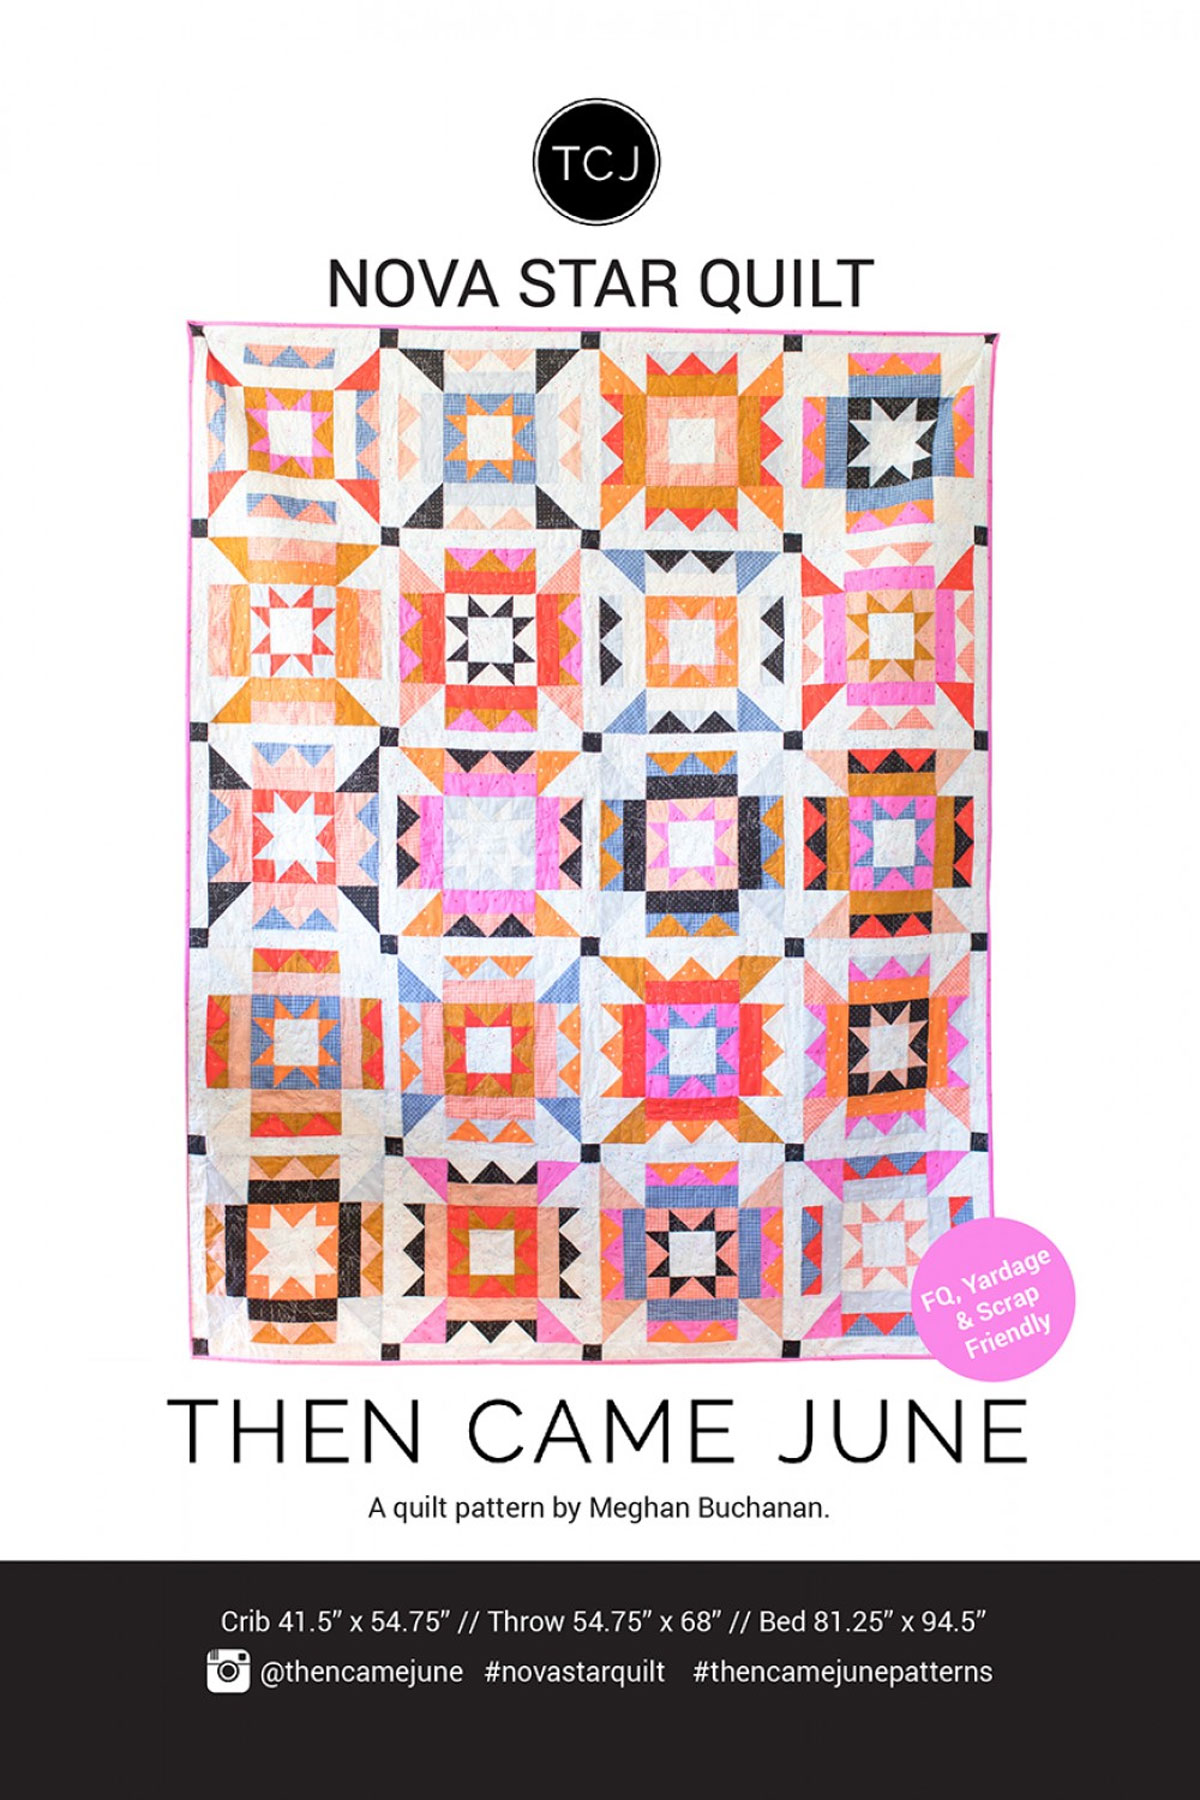 Nova-Star-quilt-sewing-pattern-Then-Came-June-Meghan-Buchanan-front